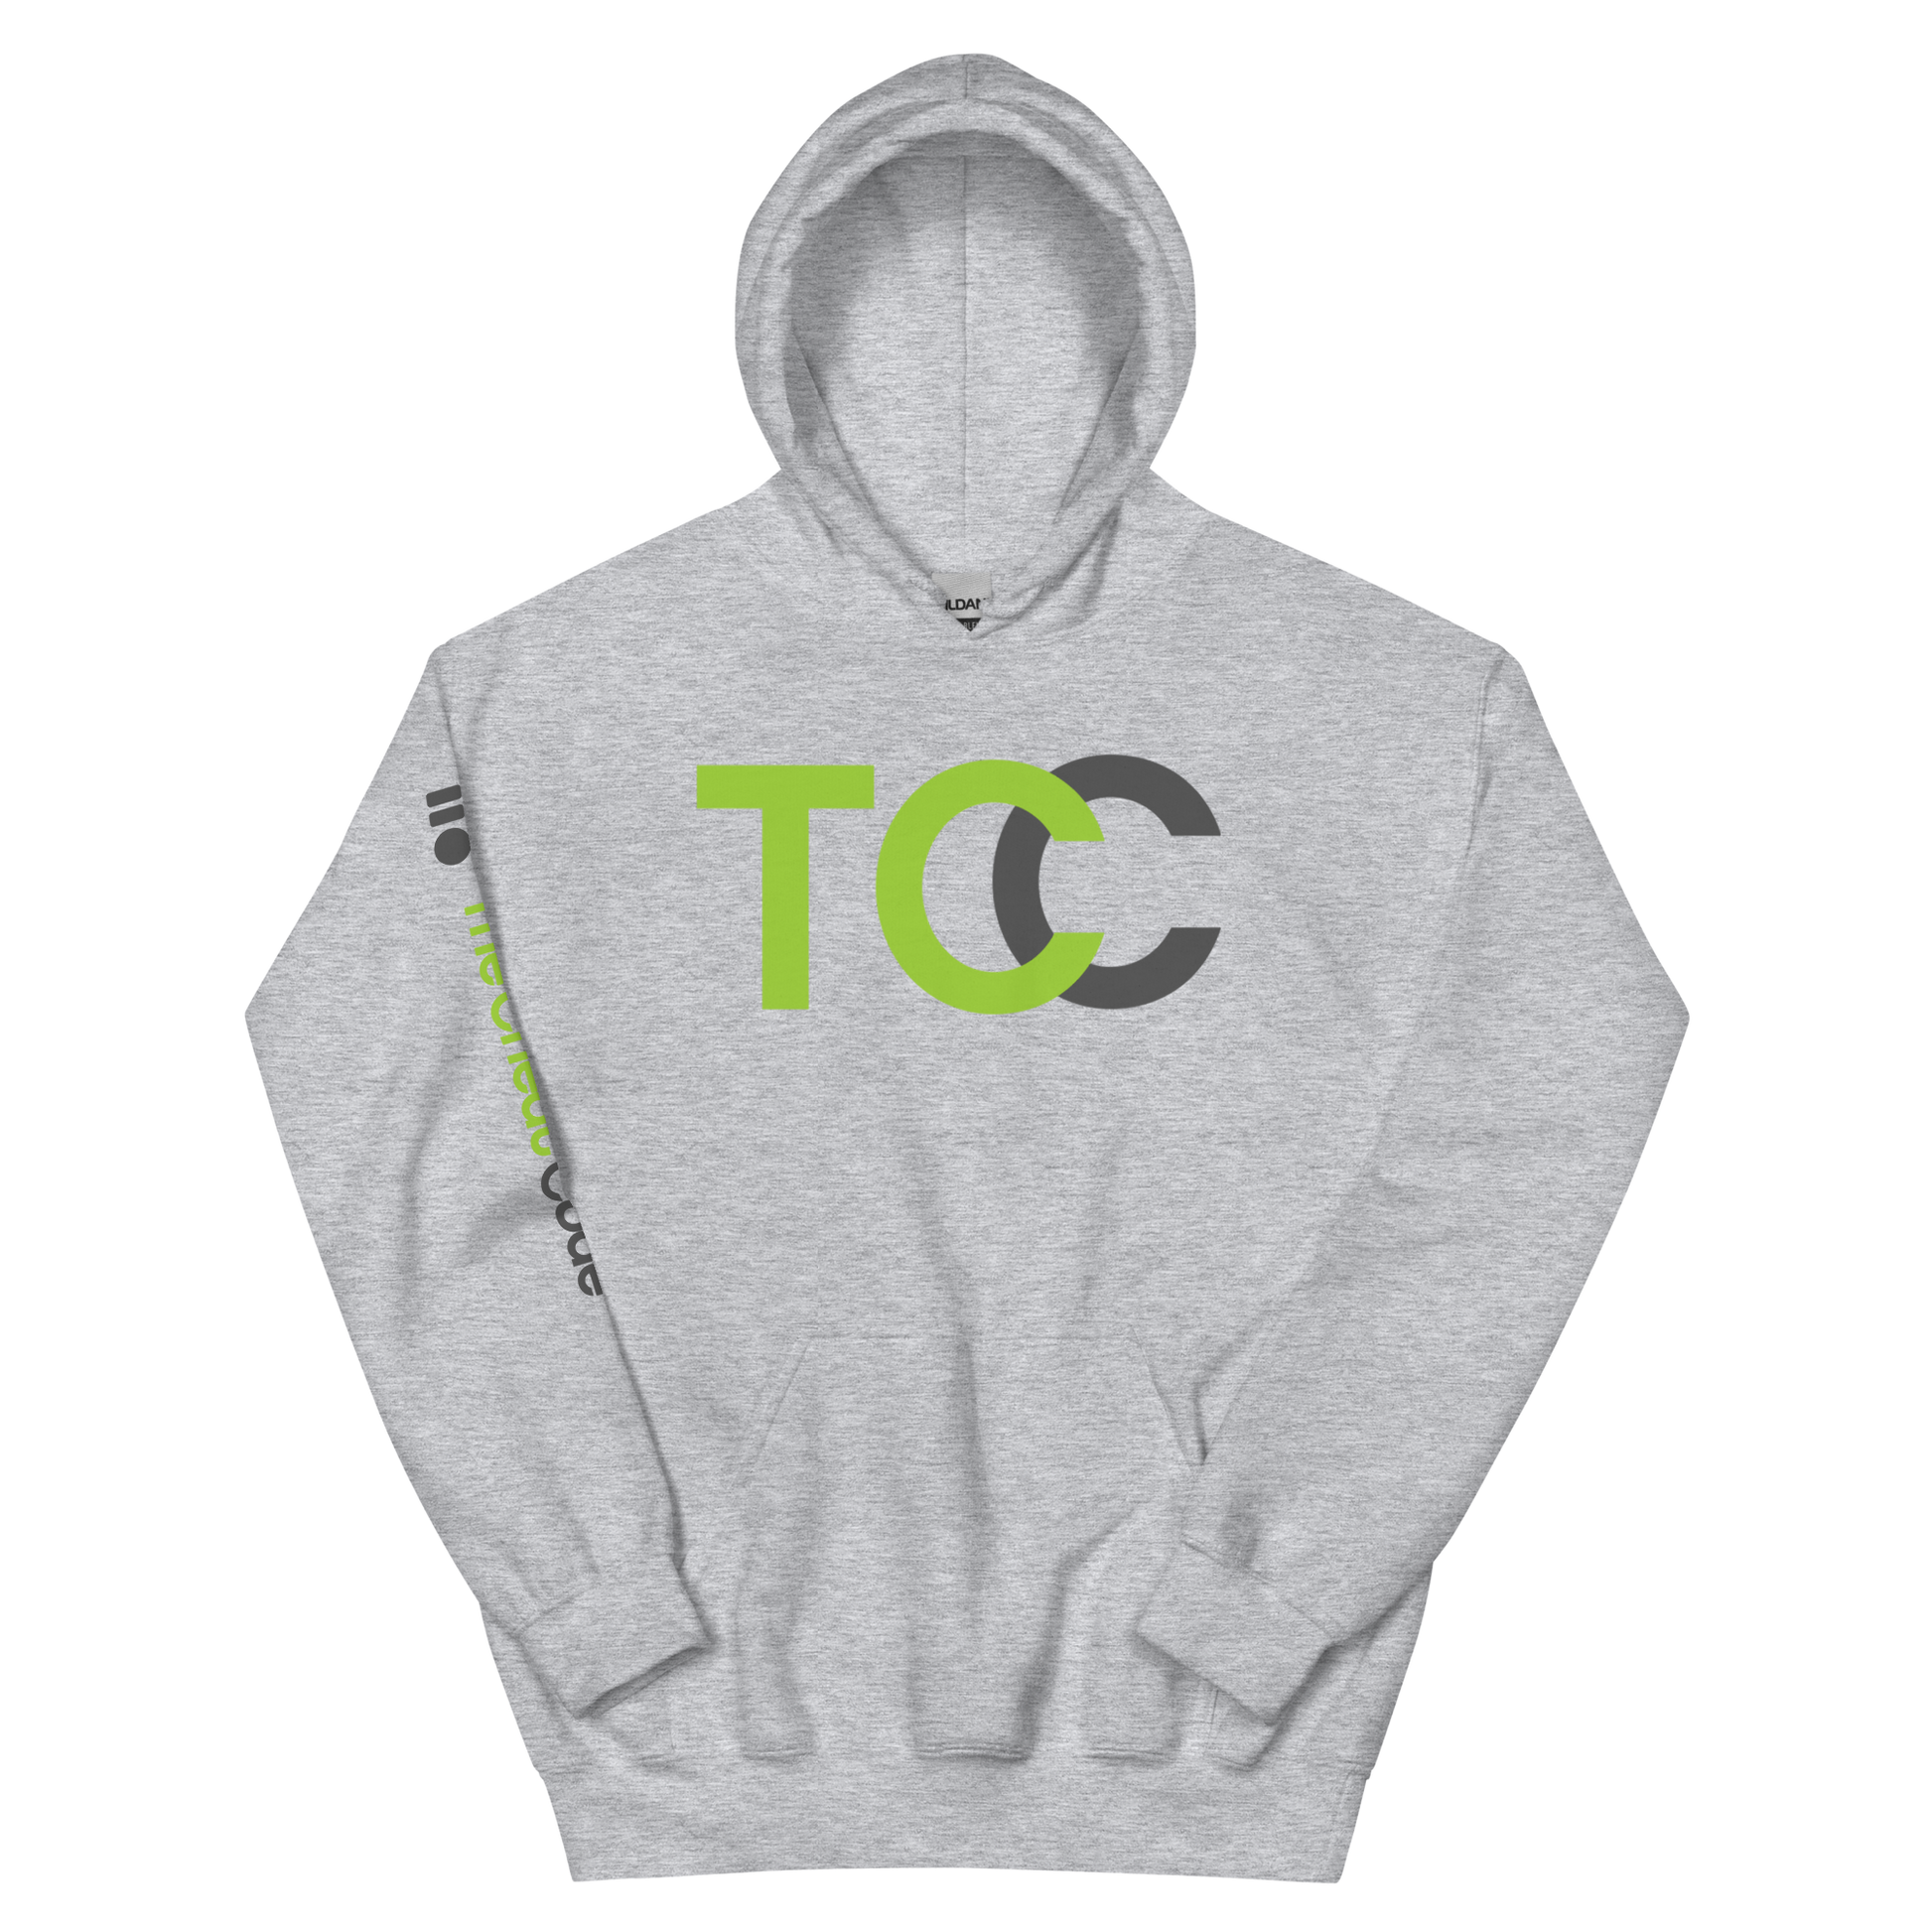 TCC HOODIE SWEATSUIT GREY/BLACK